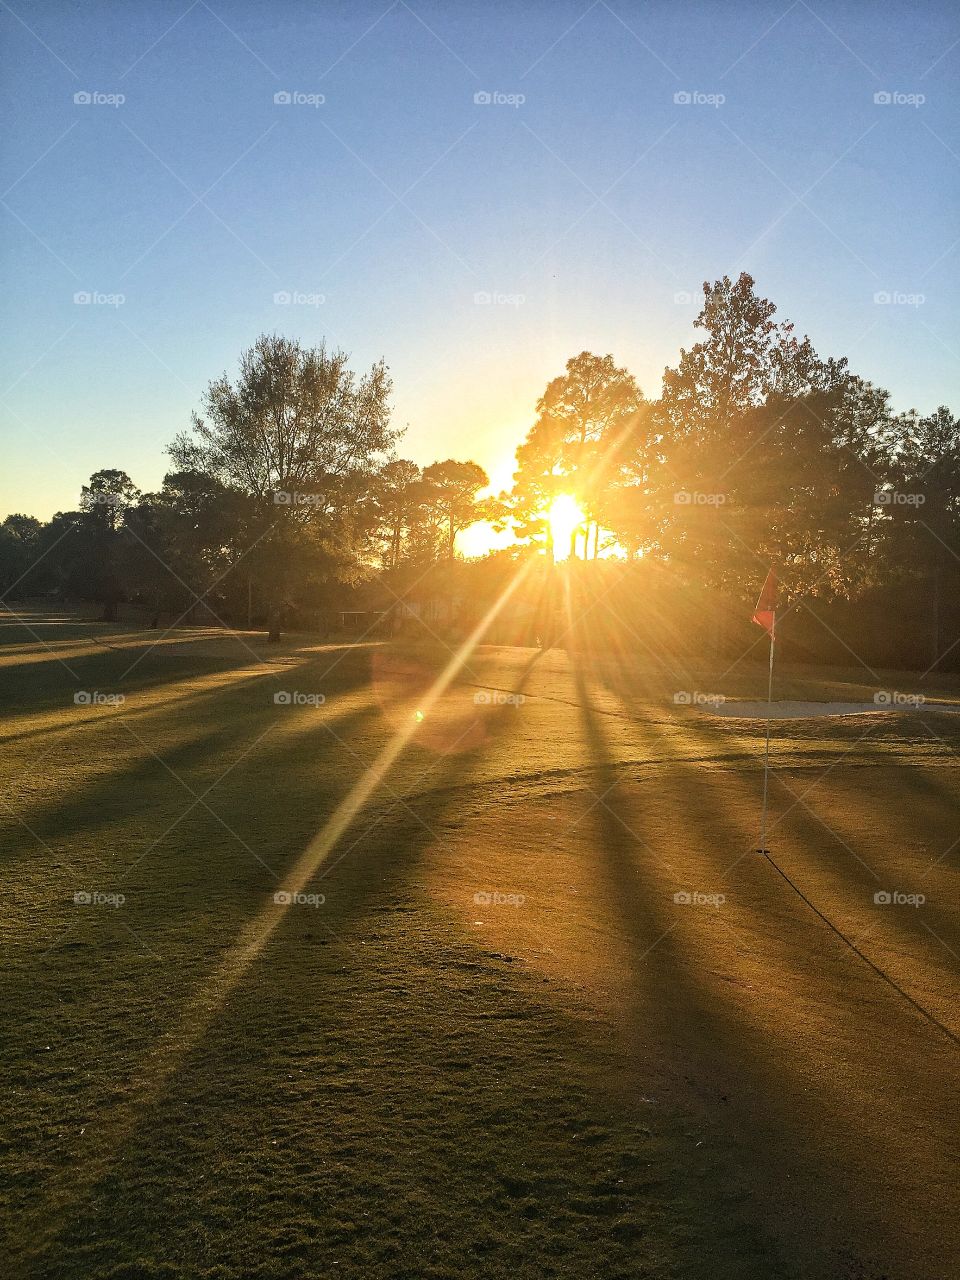 Impressive su rays in the golf course 